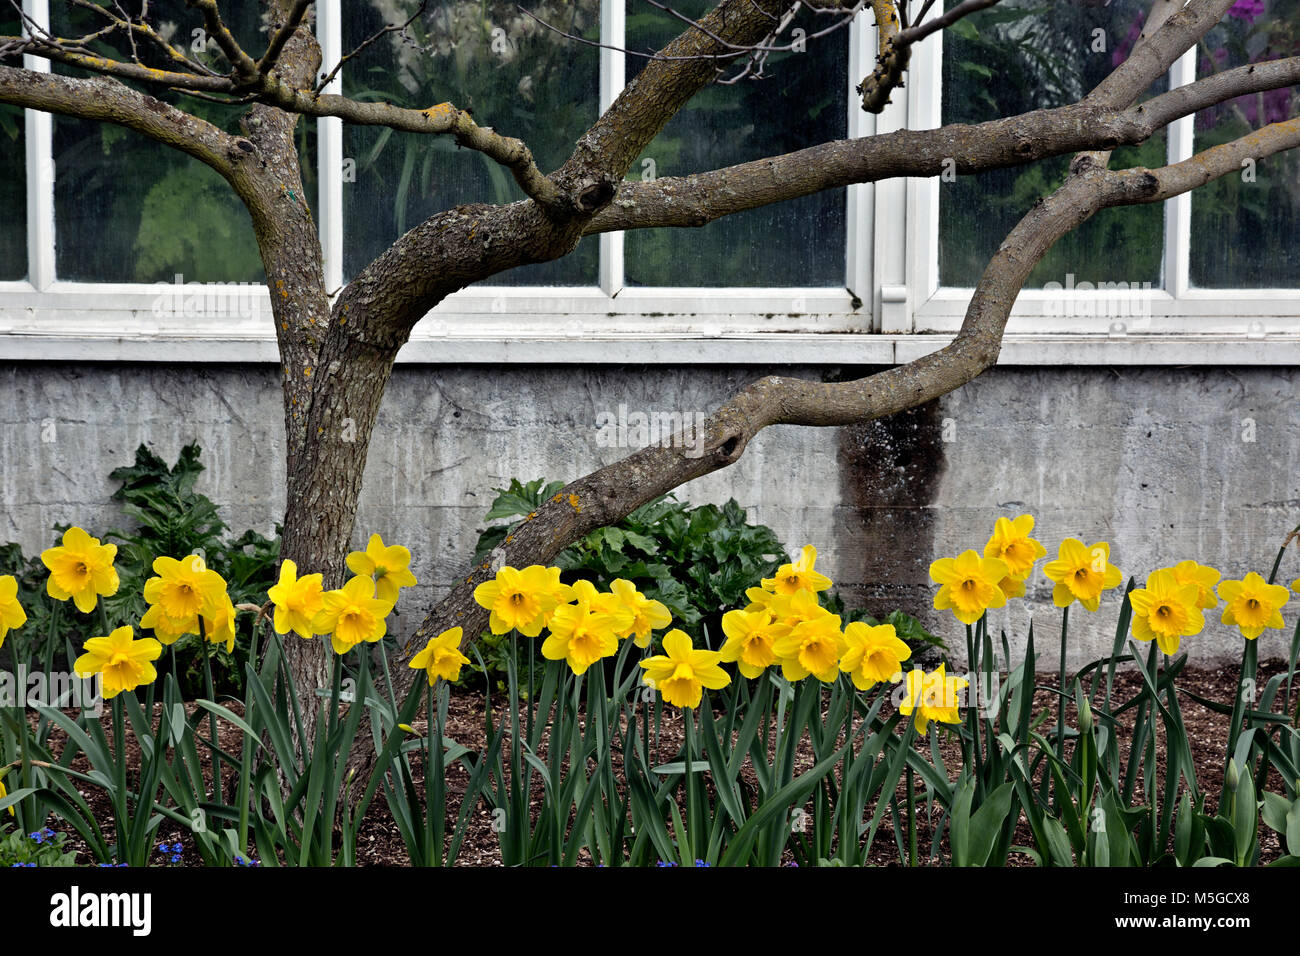 WA 13670-00 ... WASHINGTON - Narzissen blühen unter den Frühling Blumen säumen die Basis des Konservatoriums in Seattle Freiwillige Park. Stockfoto